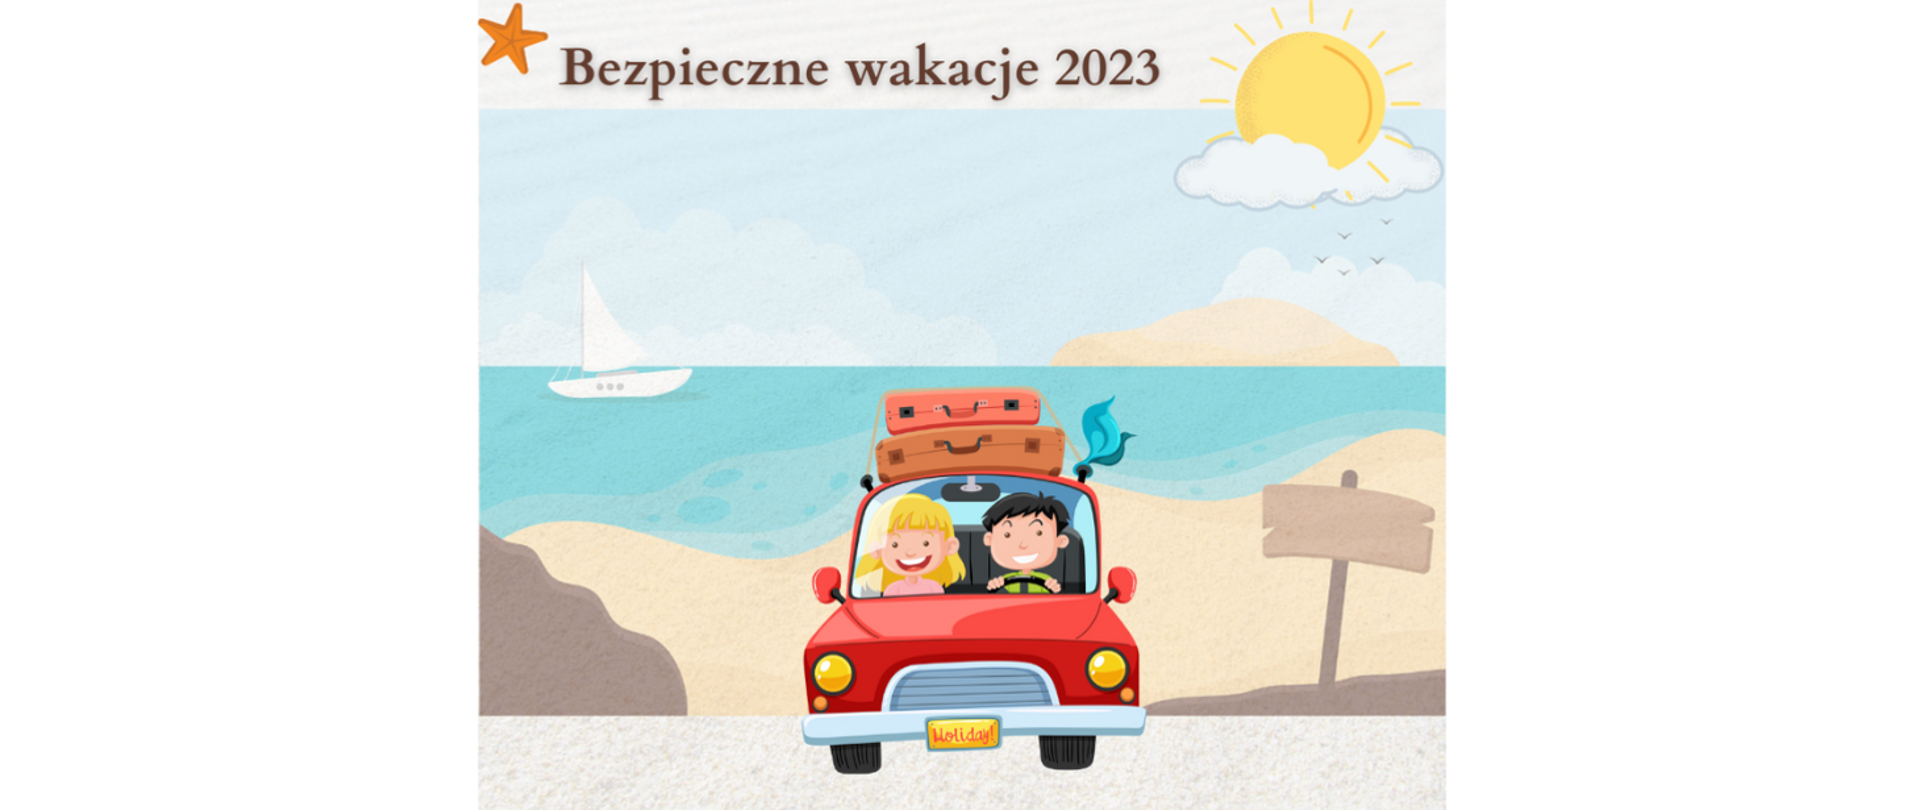 Bezpieczne wakacje 2023